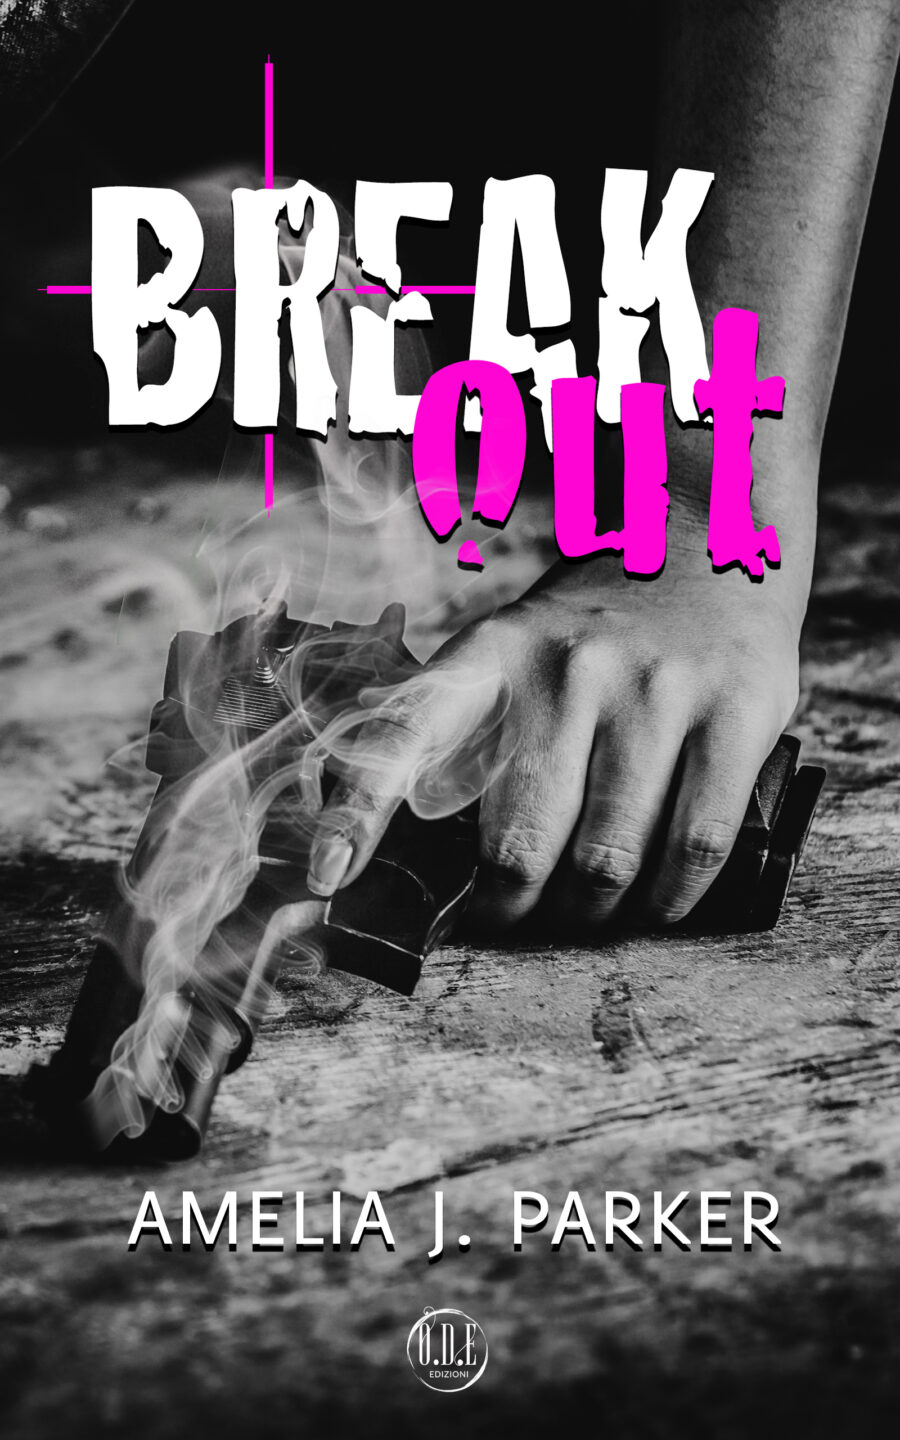 Break out